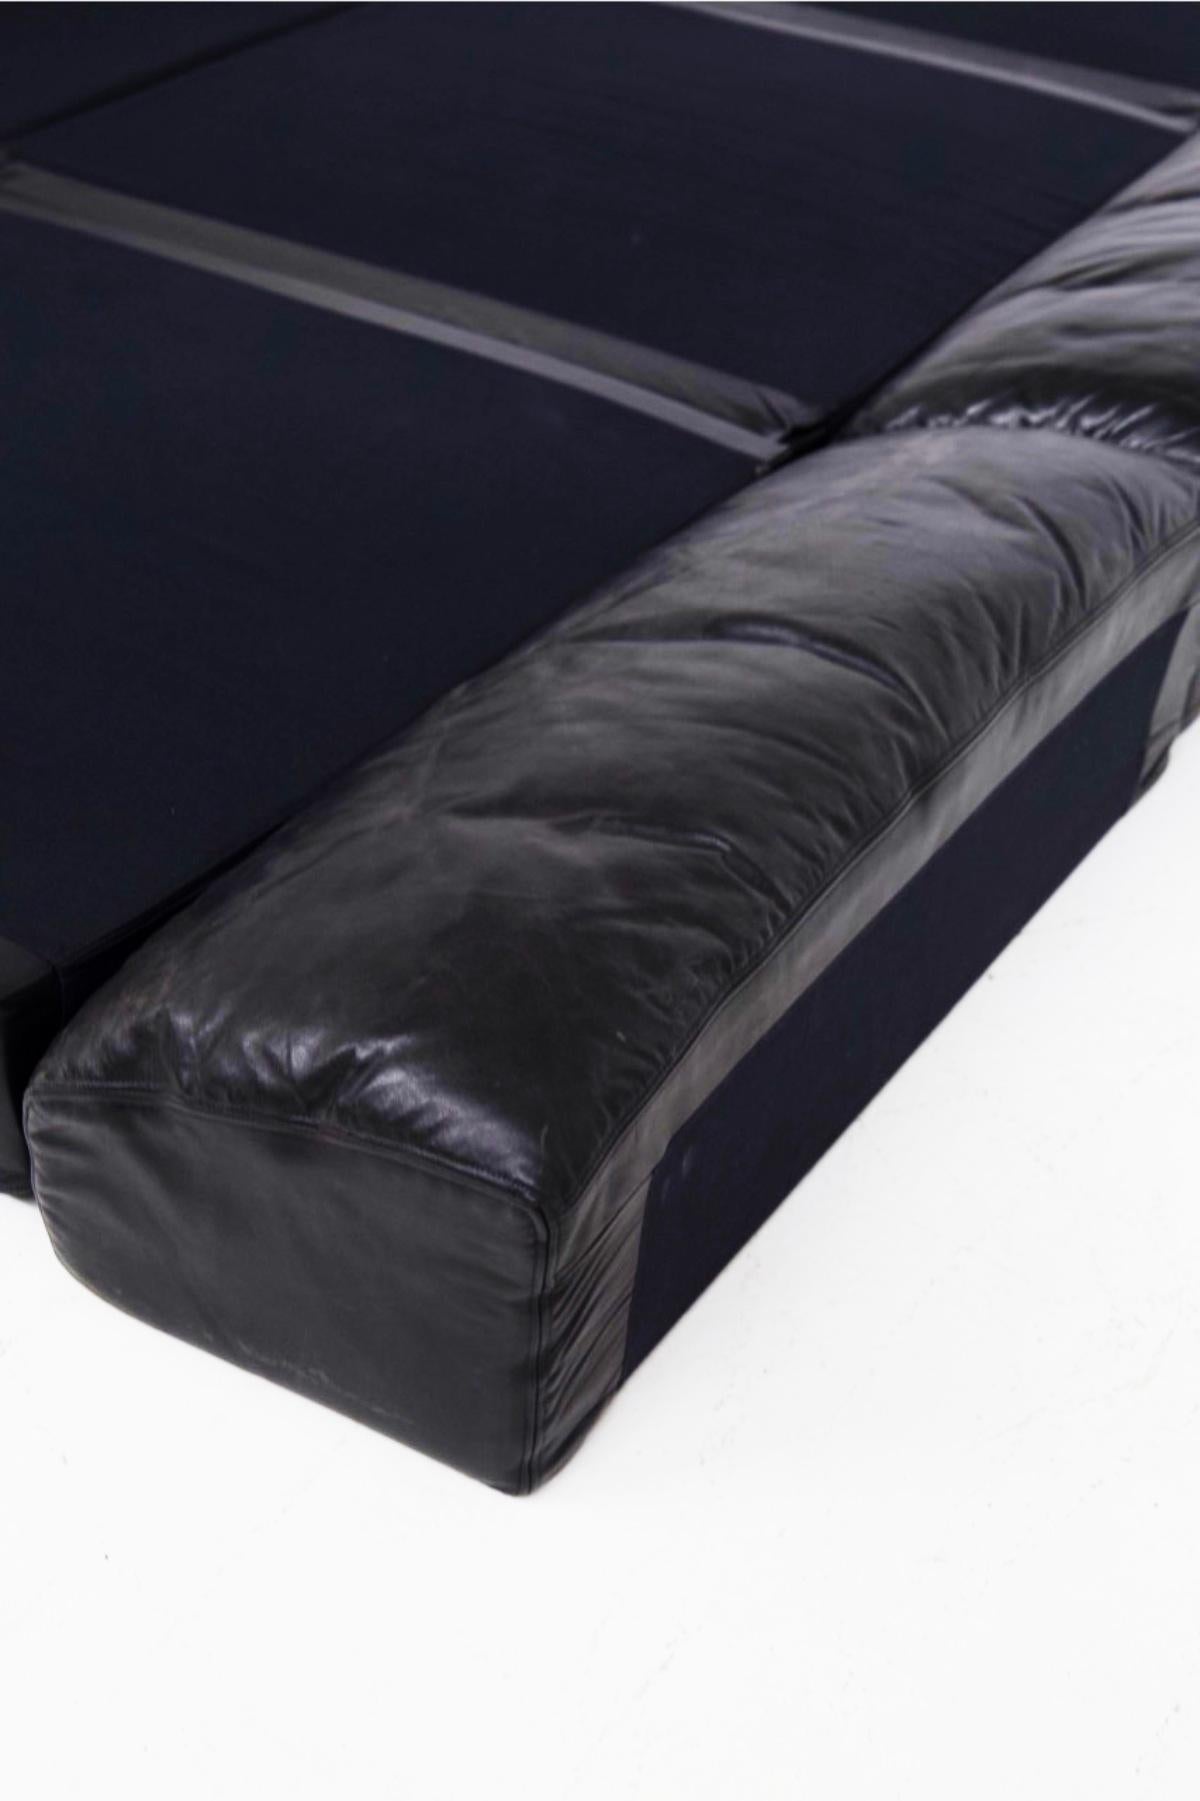 Italian Vintage Black Leather Sofa Ds76 Sofart